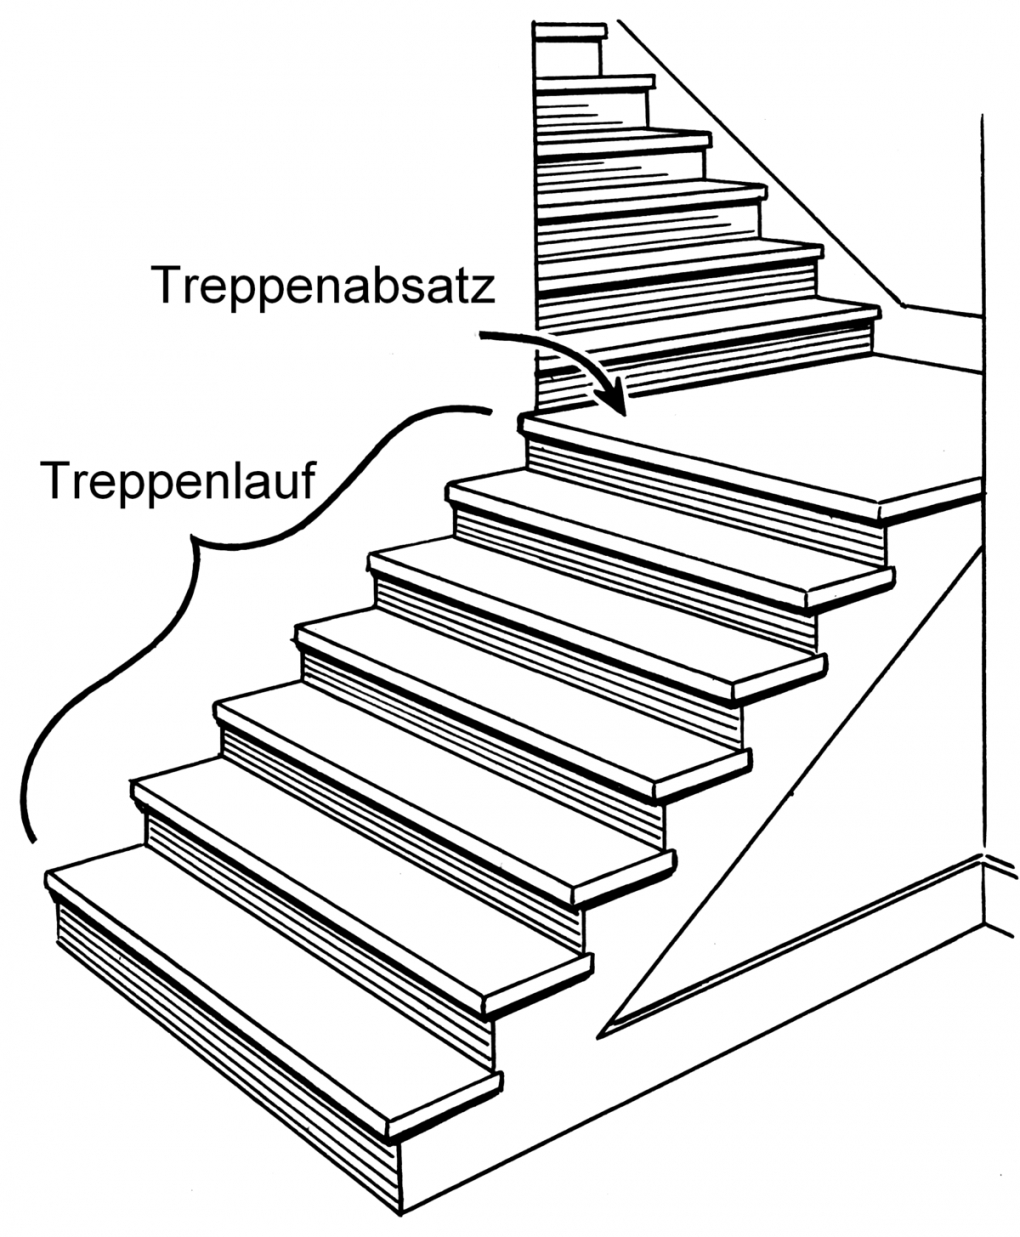 Treppenabsatz – Wikipedia von Treppe Mit Podest Berechnen Bild